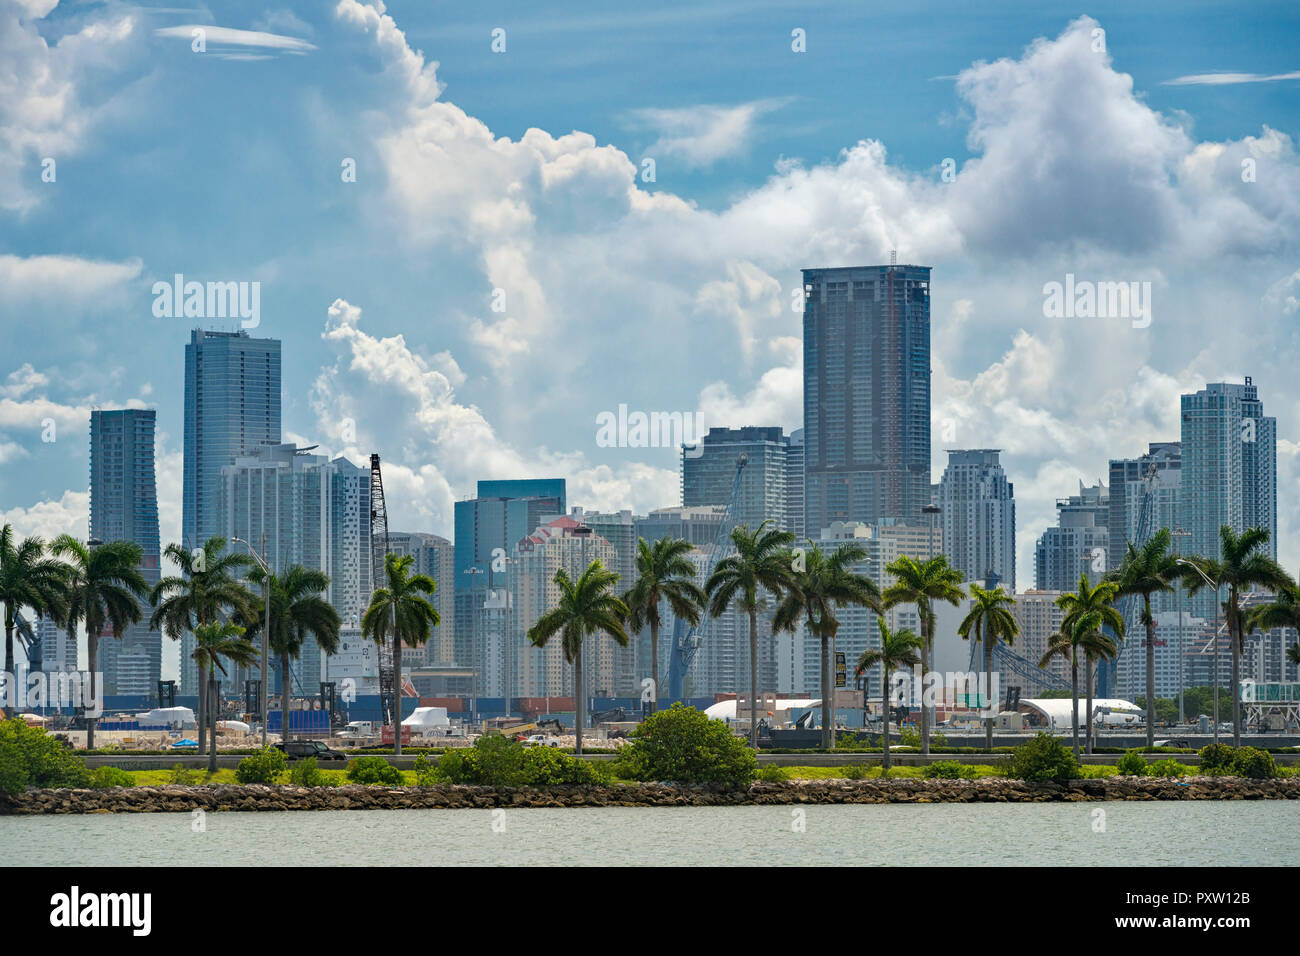 Vereinigte Staaten von Amerika, Florida, Miami, Downtown, Skyline mit Hochhäusern in der Innenstadt von Miami und Palmen mit Wolken über Stockfoto